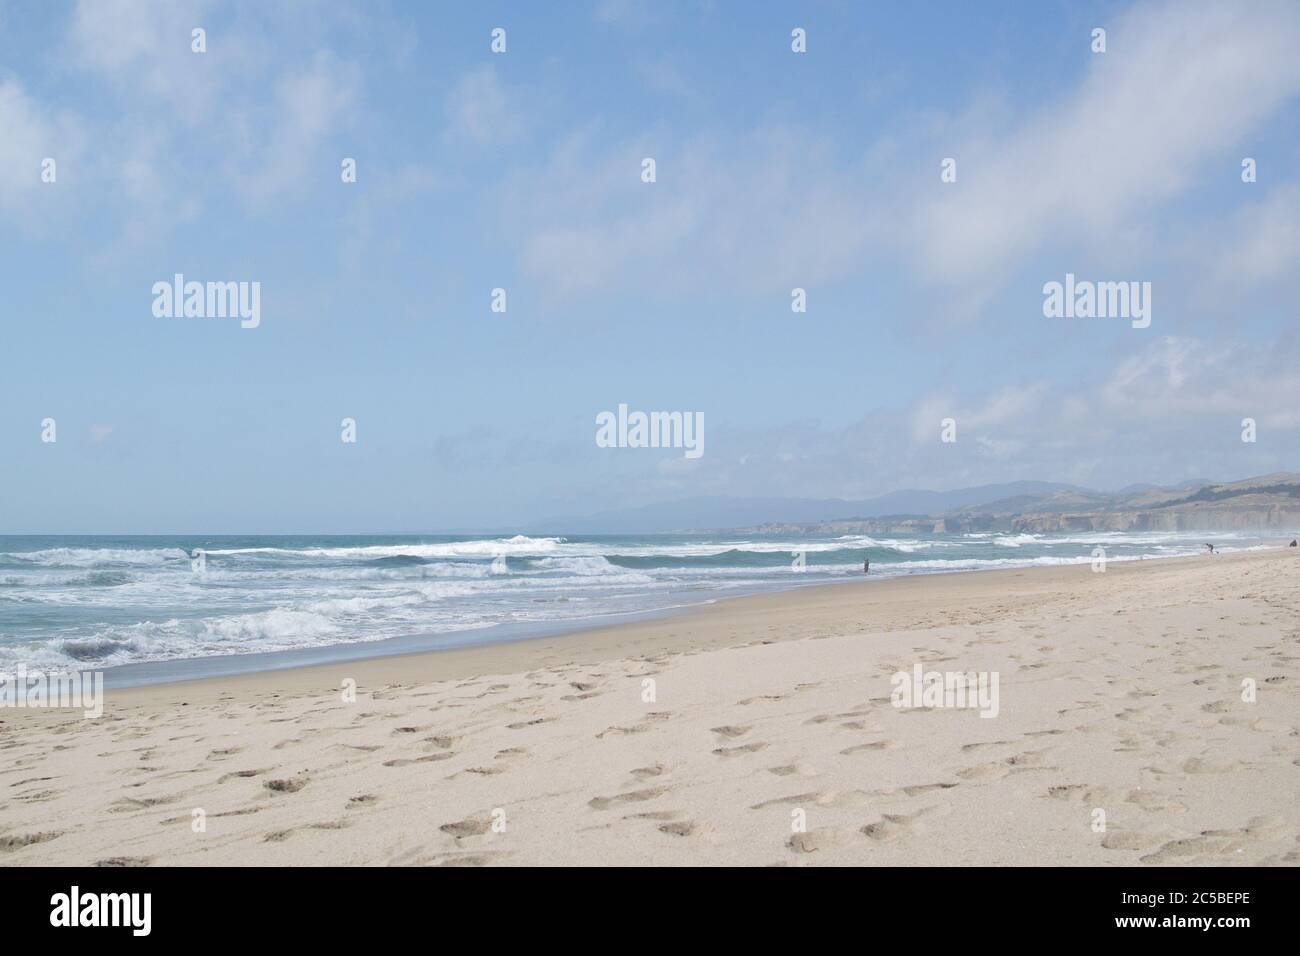 San Gregorio state Beach, cielo blu, nuvole bianche soffici, onde che si ondano, sabbia pallida con impronte, scogliere e montagne in lontananza. Foto Stock